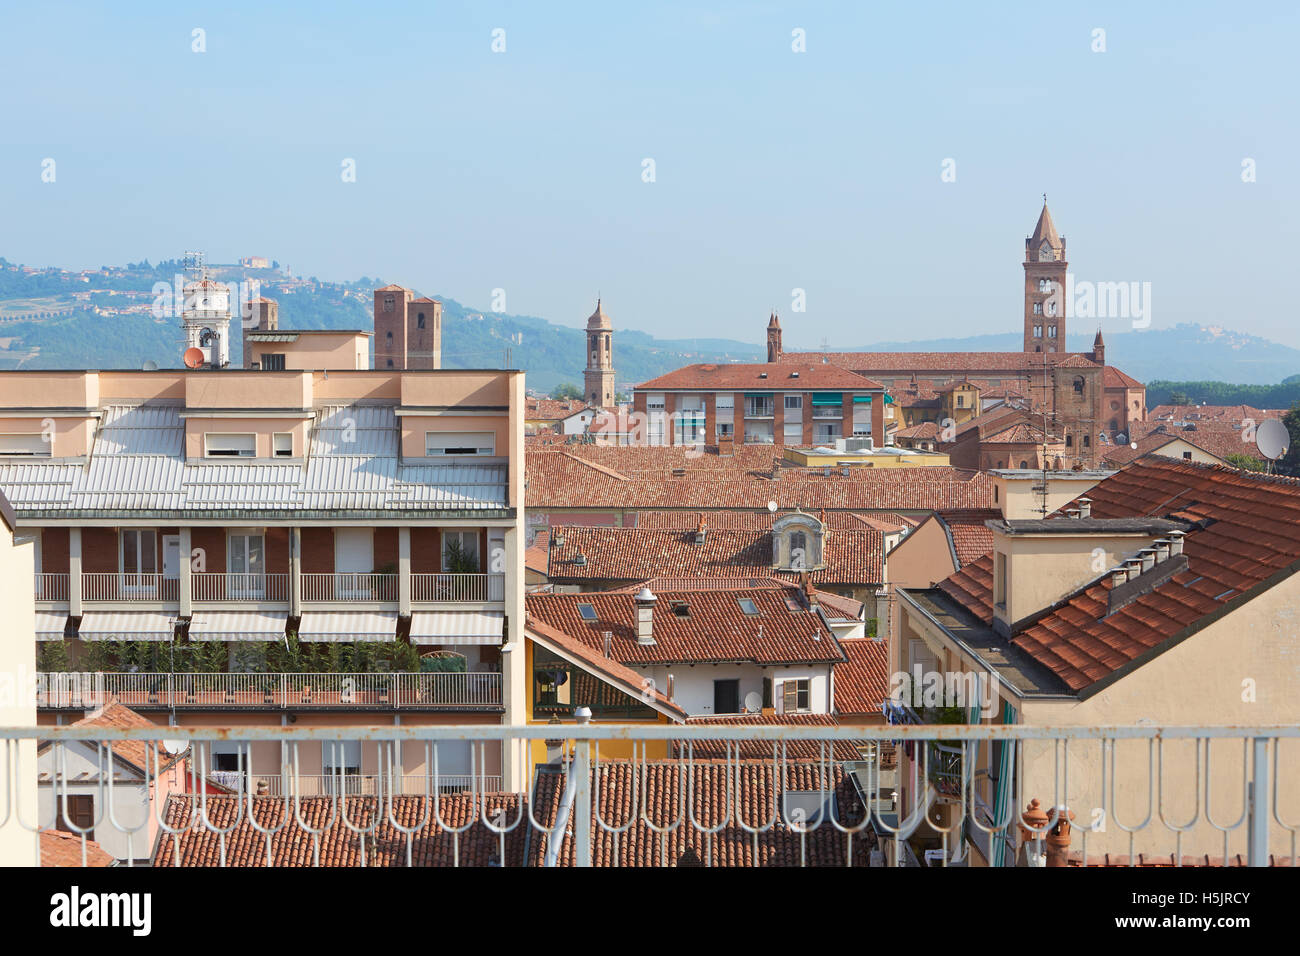 Alba tejados con vista del campanario de la catedral, Italia Foto de stock